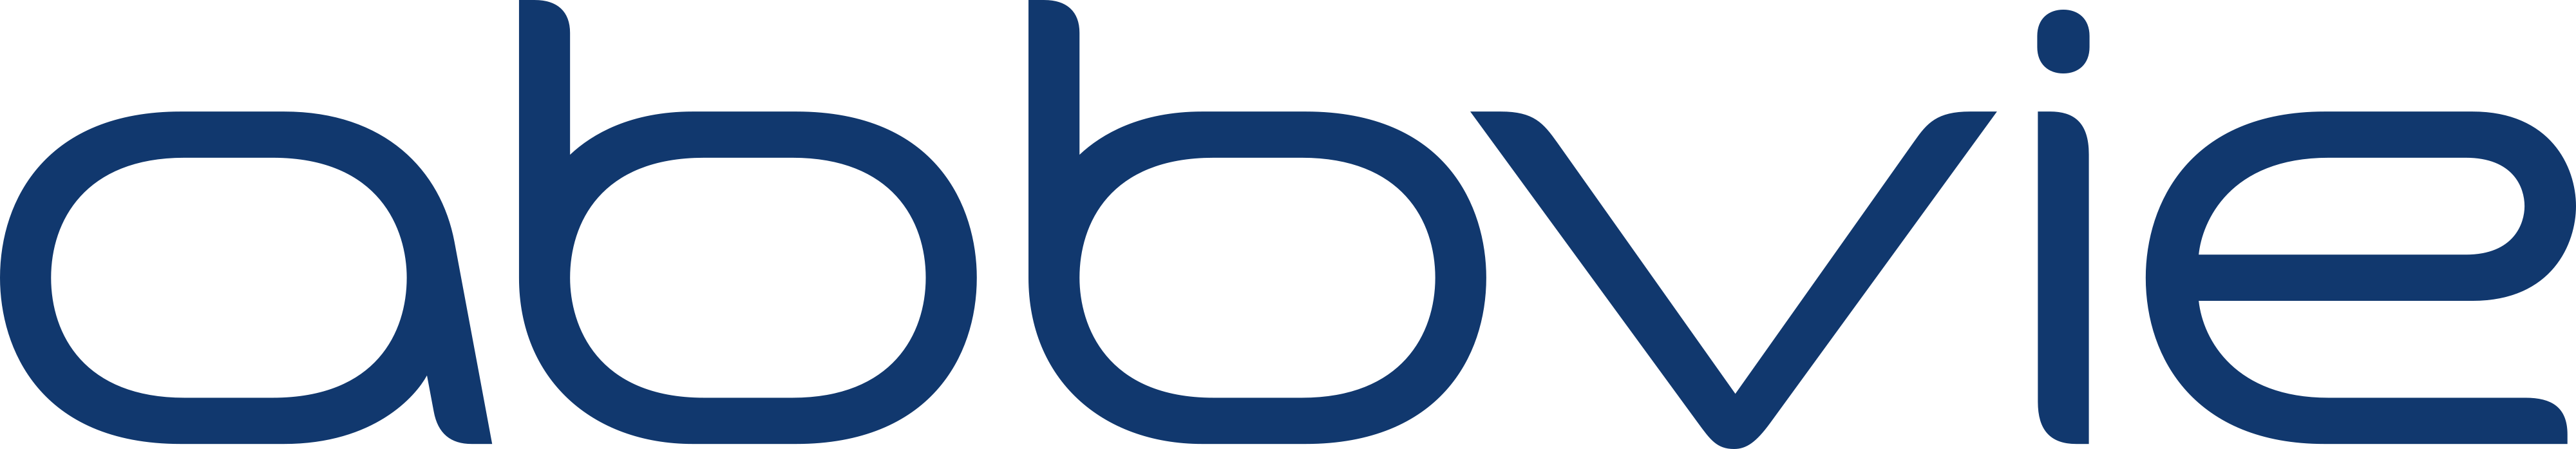 AbbVie logo - download.